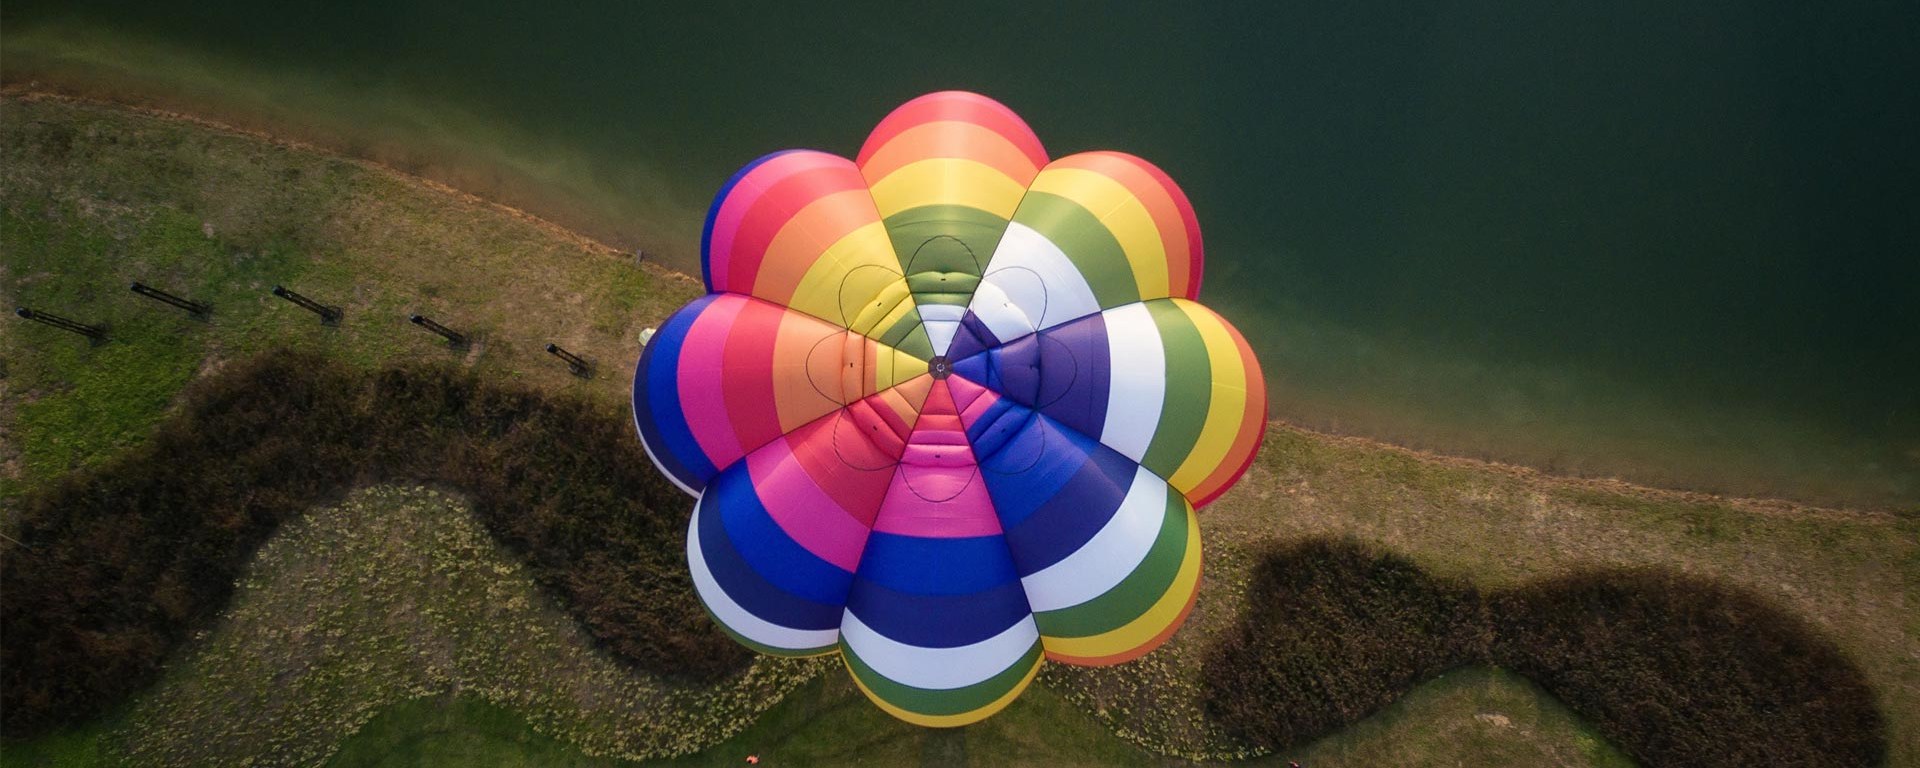 Ein farbiger Heissluftballon fliegt über eine Wiese - aus der Vogelperspektive.